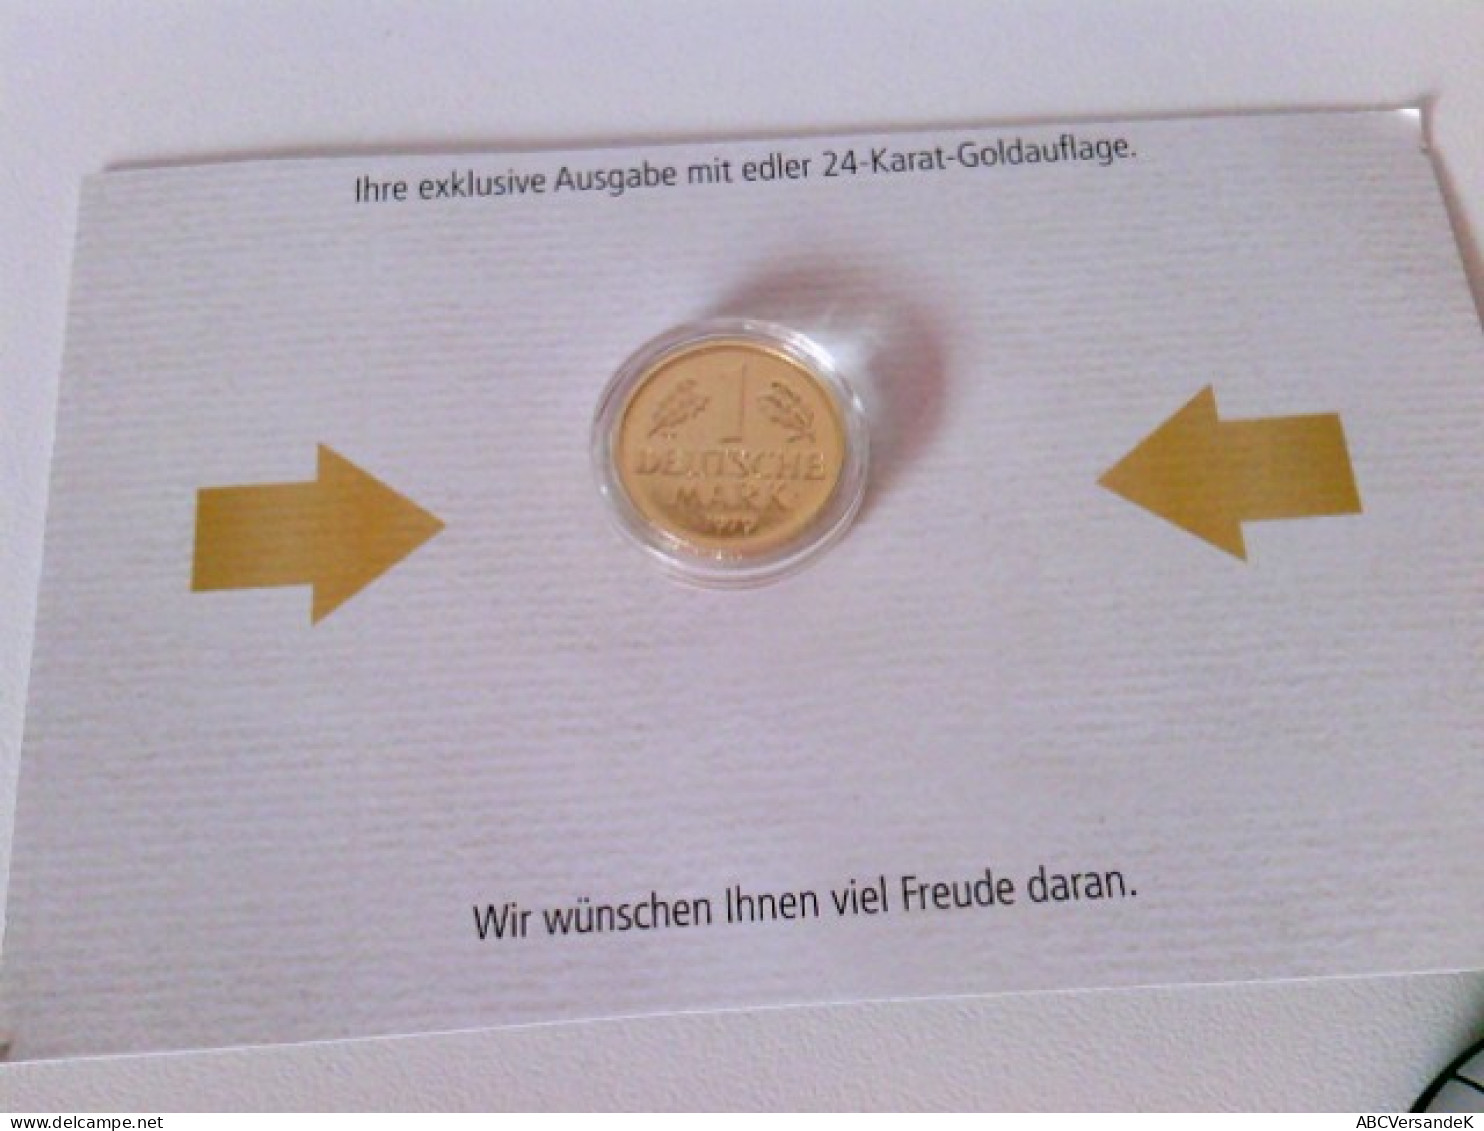 Münzen/ Medaillen: Hier 5 X 1 DM 1971, 1979, 1980, 1990, 1991 Vergoldet, Deutsche Mark Mit 24 Karat Goldauflag - Numismatica